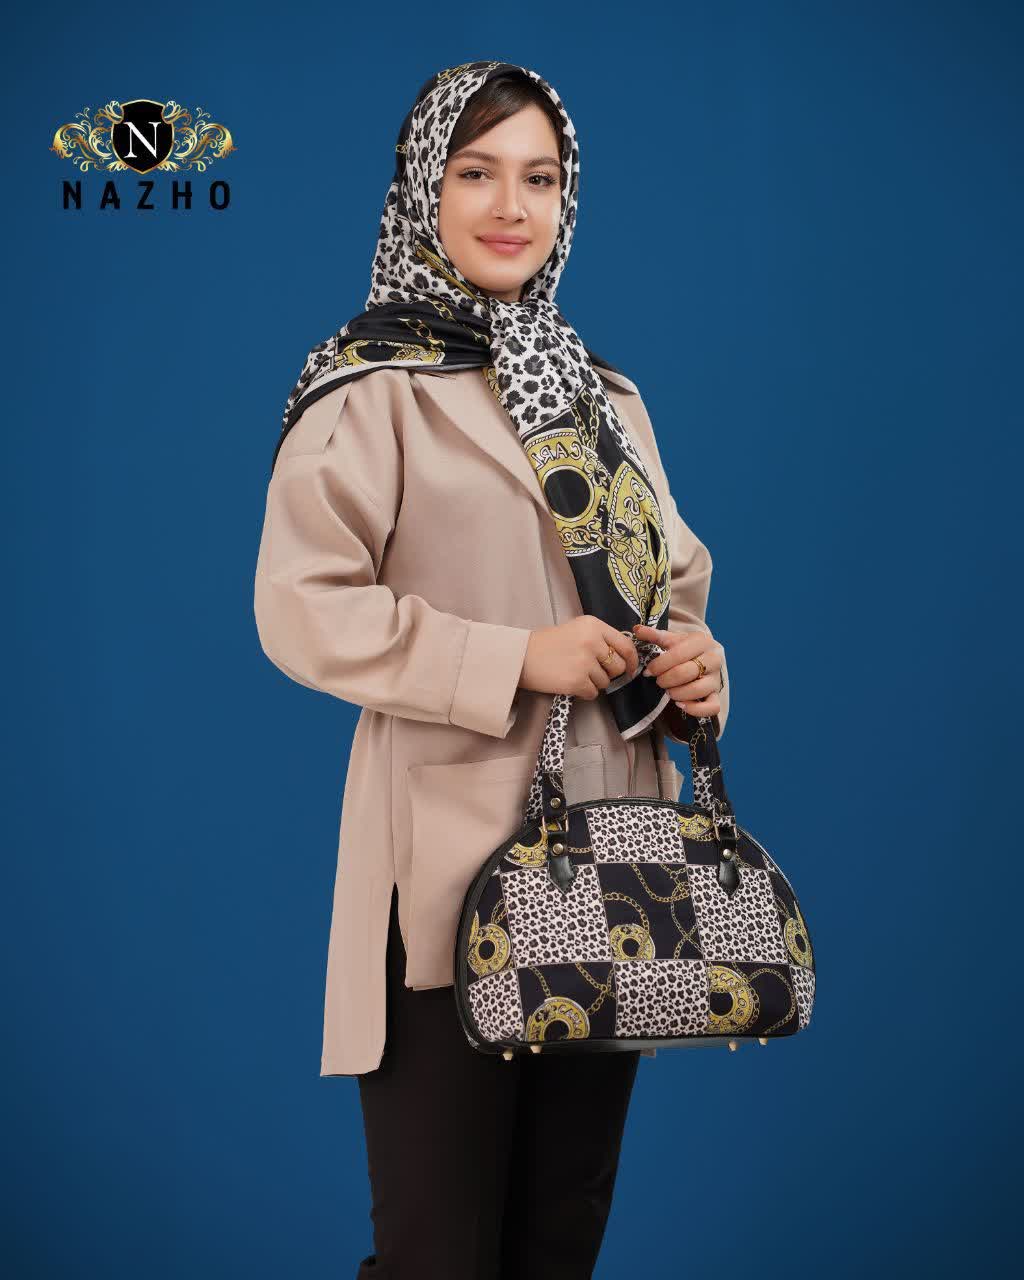 ست کیف و روسری زنانه با کیف نیمگرد رنگ مشکی طرحدار با ارسال رایگان کد na1490